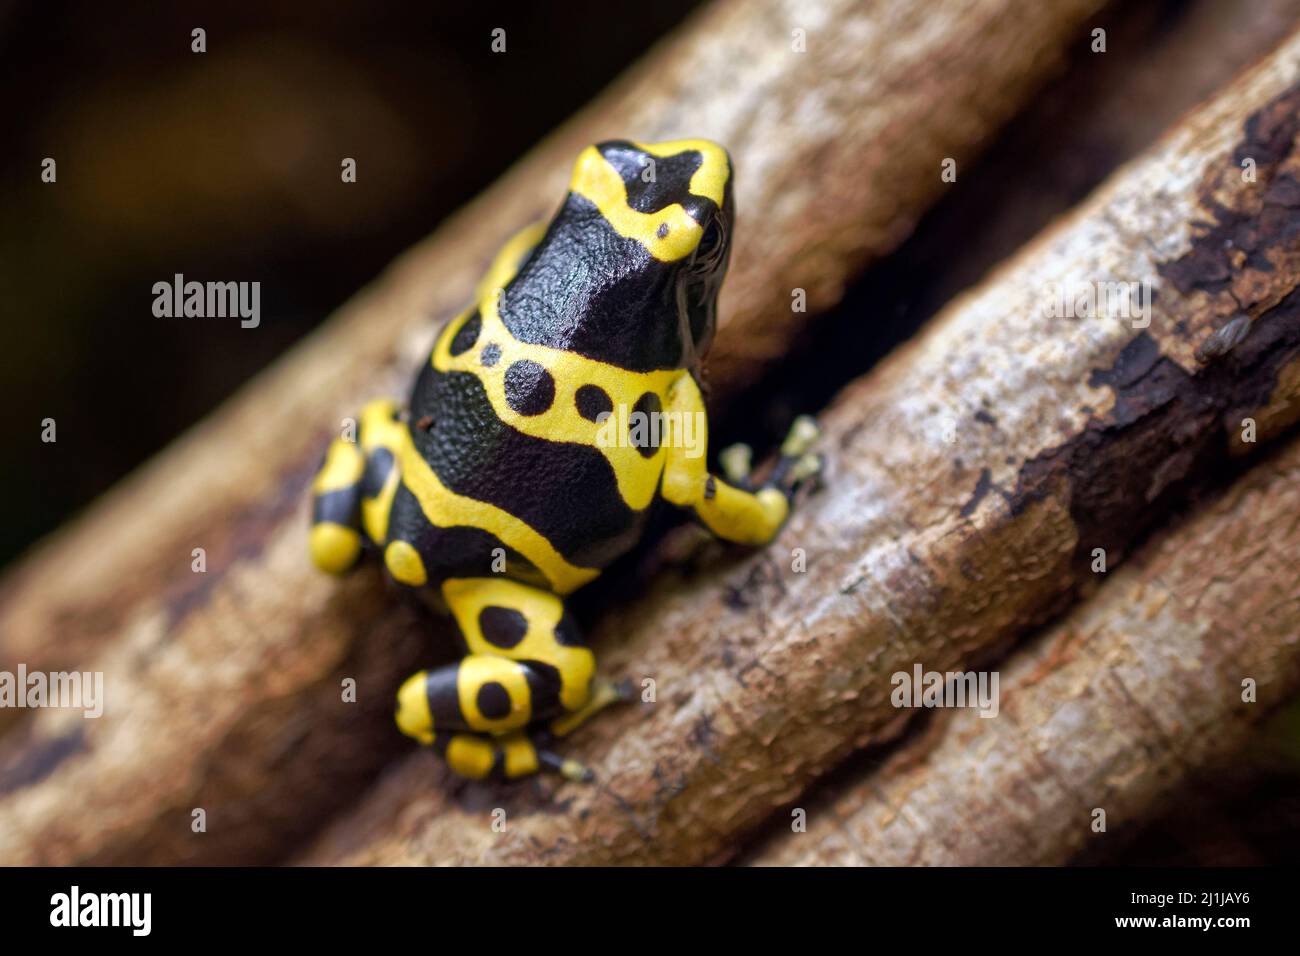 Gelb gebänderter Giftpfeilfrosch - Dendrobates leucomelas Stockfoto